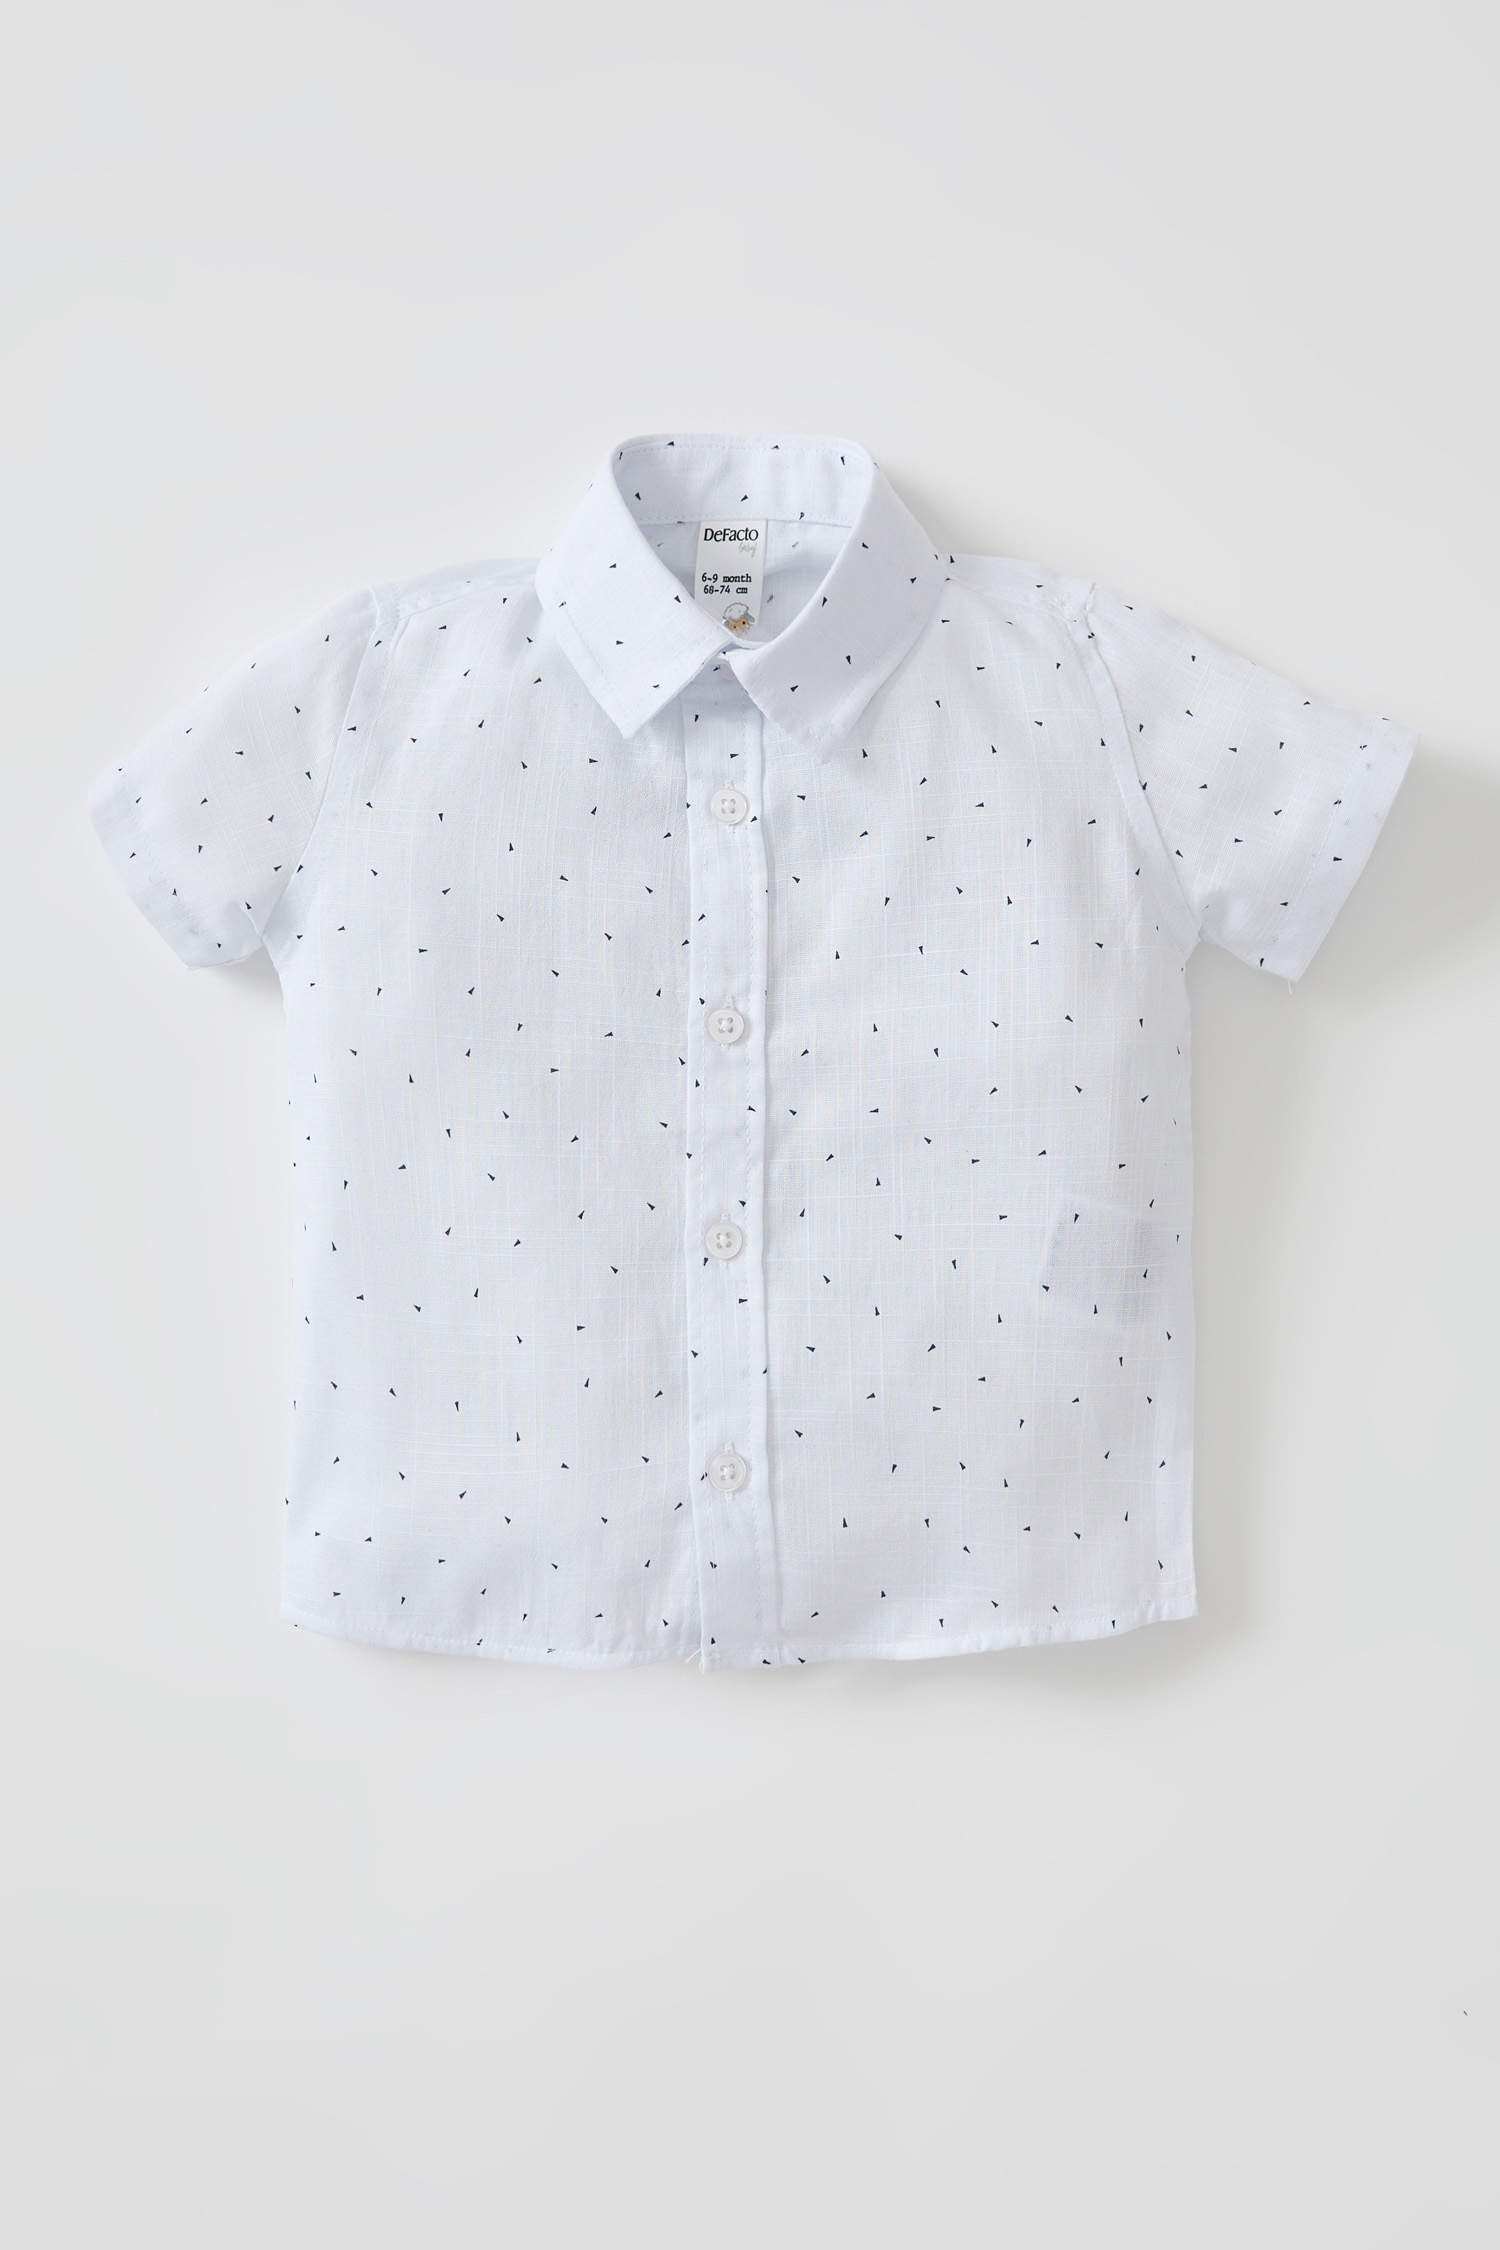 Chemise tee-shirt enfant Enfants Garçons Chemises & T-shirts Chemises manches courtes H&M Chemises manches courtes 